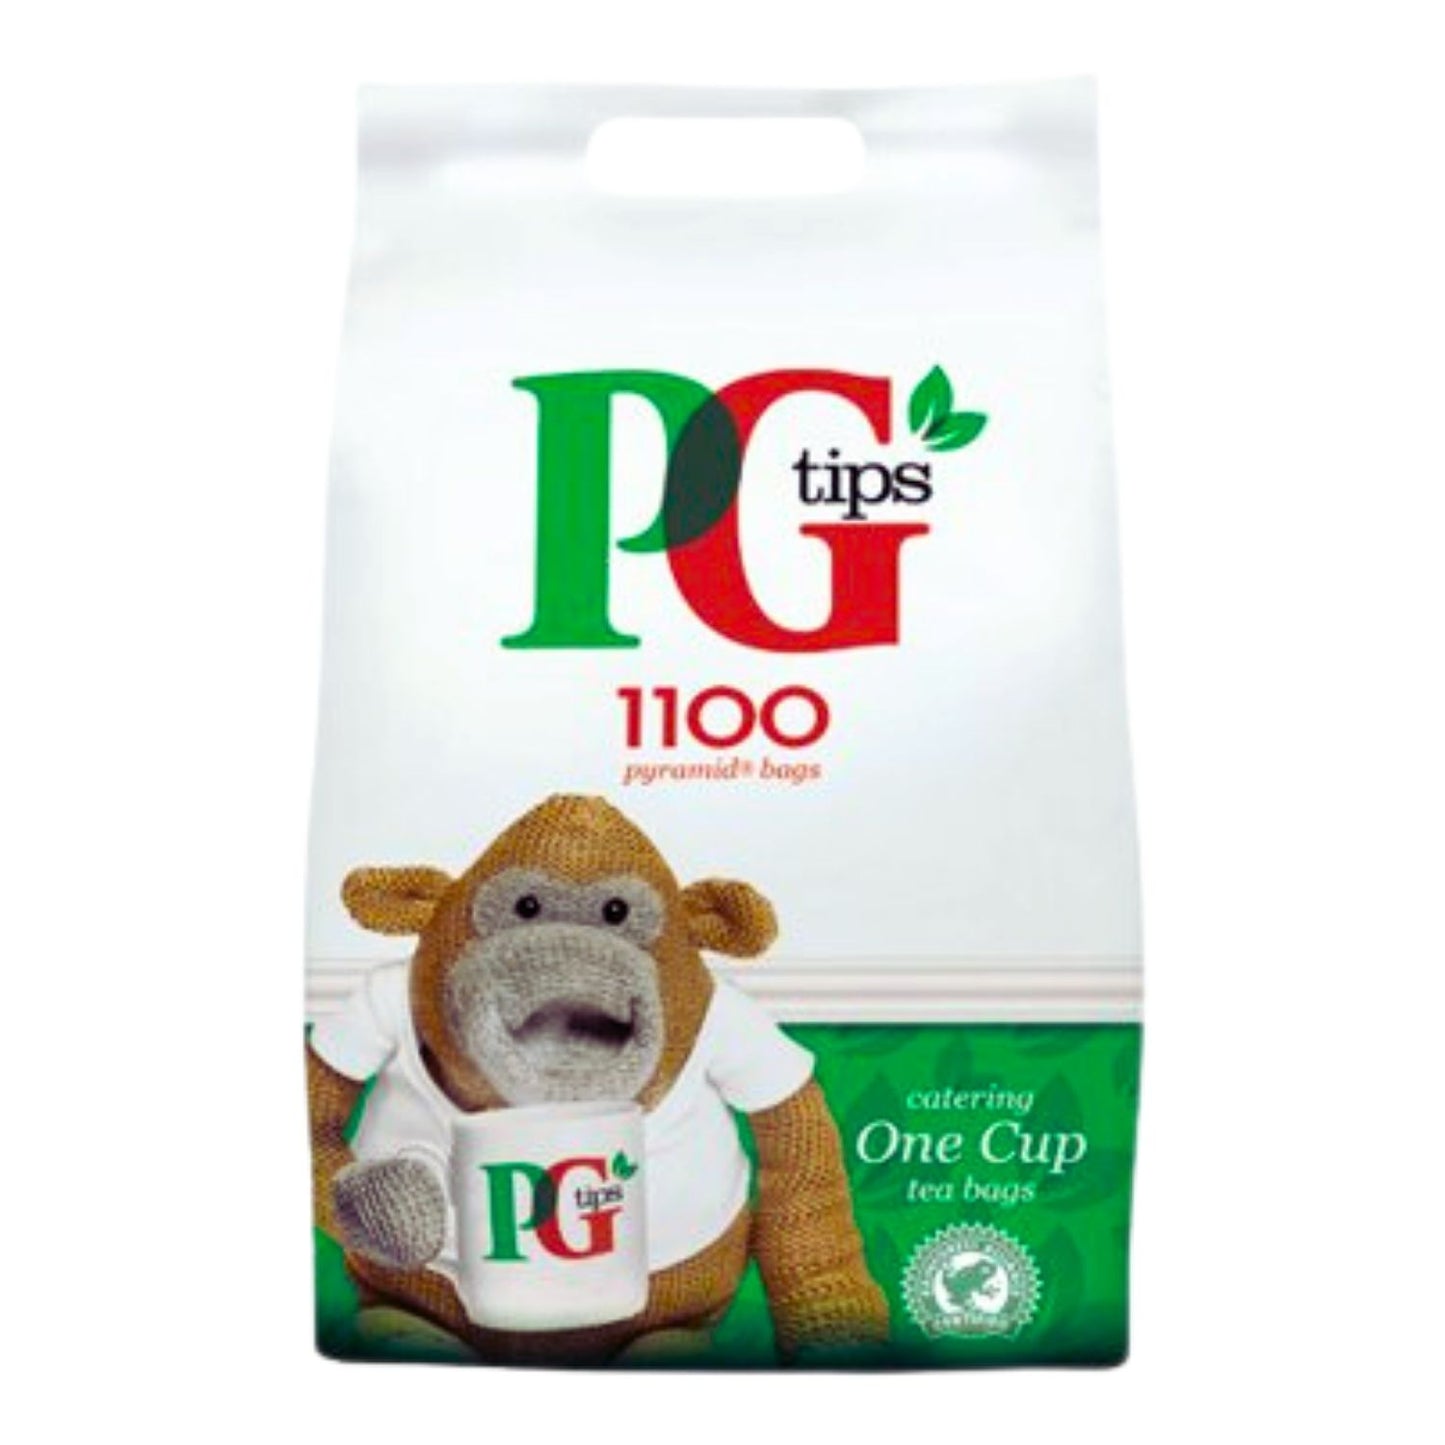 PG Tips Teabag -1100